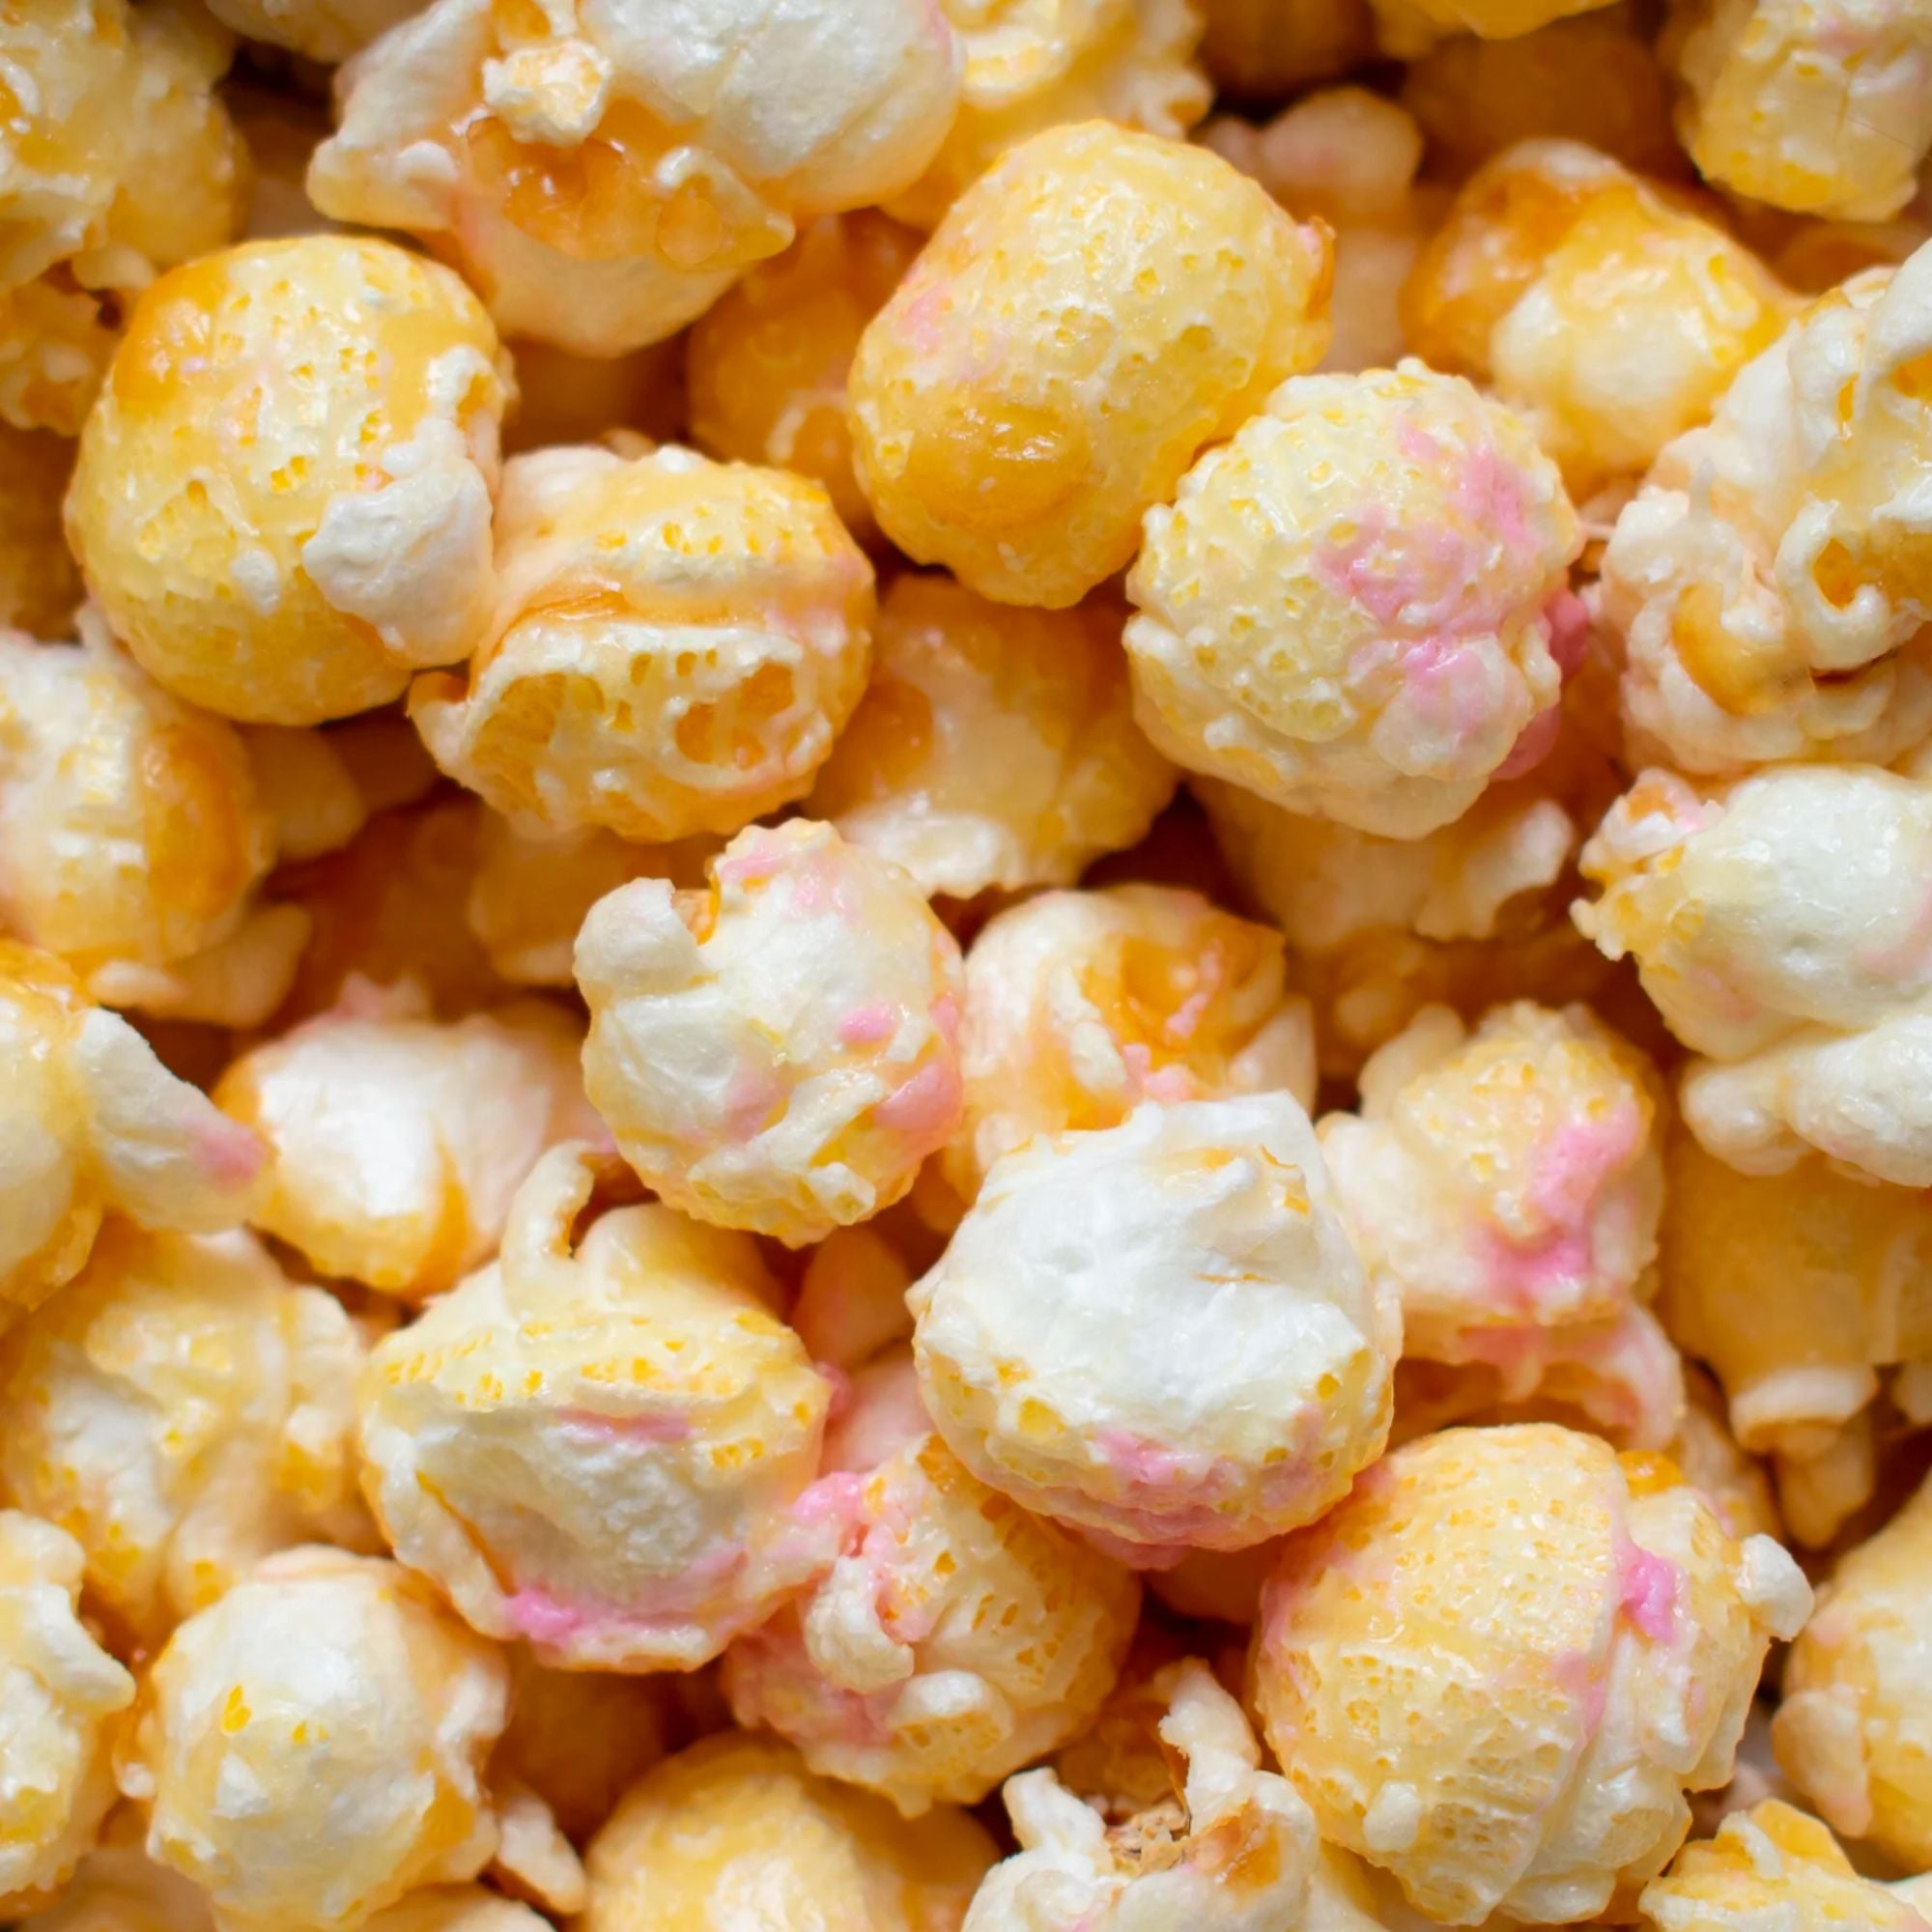 Toasted Marshmallow Popcorn